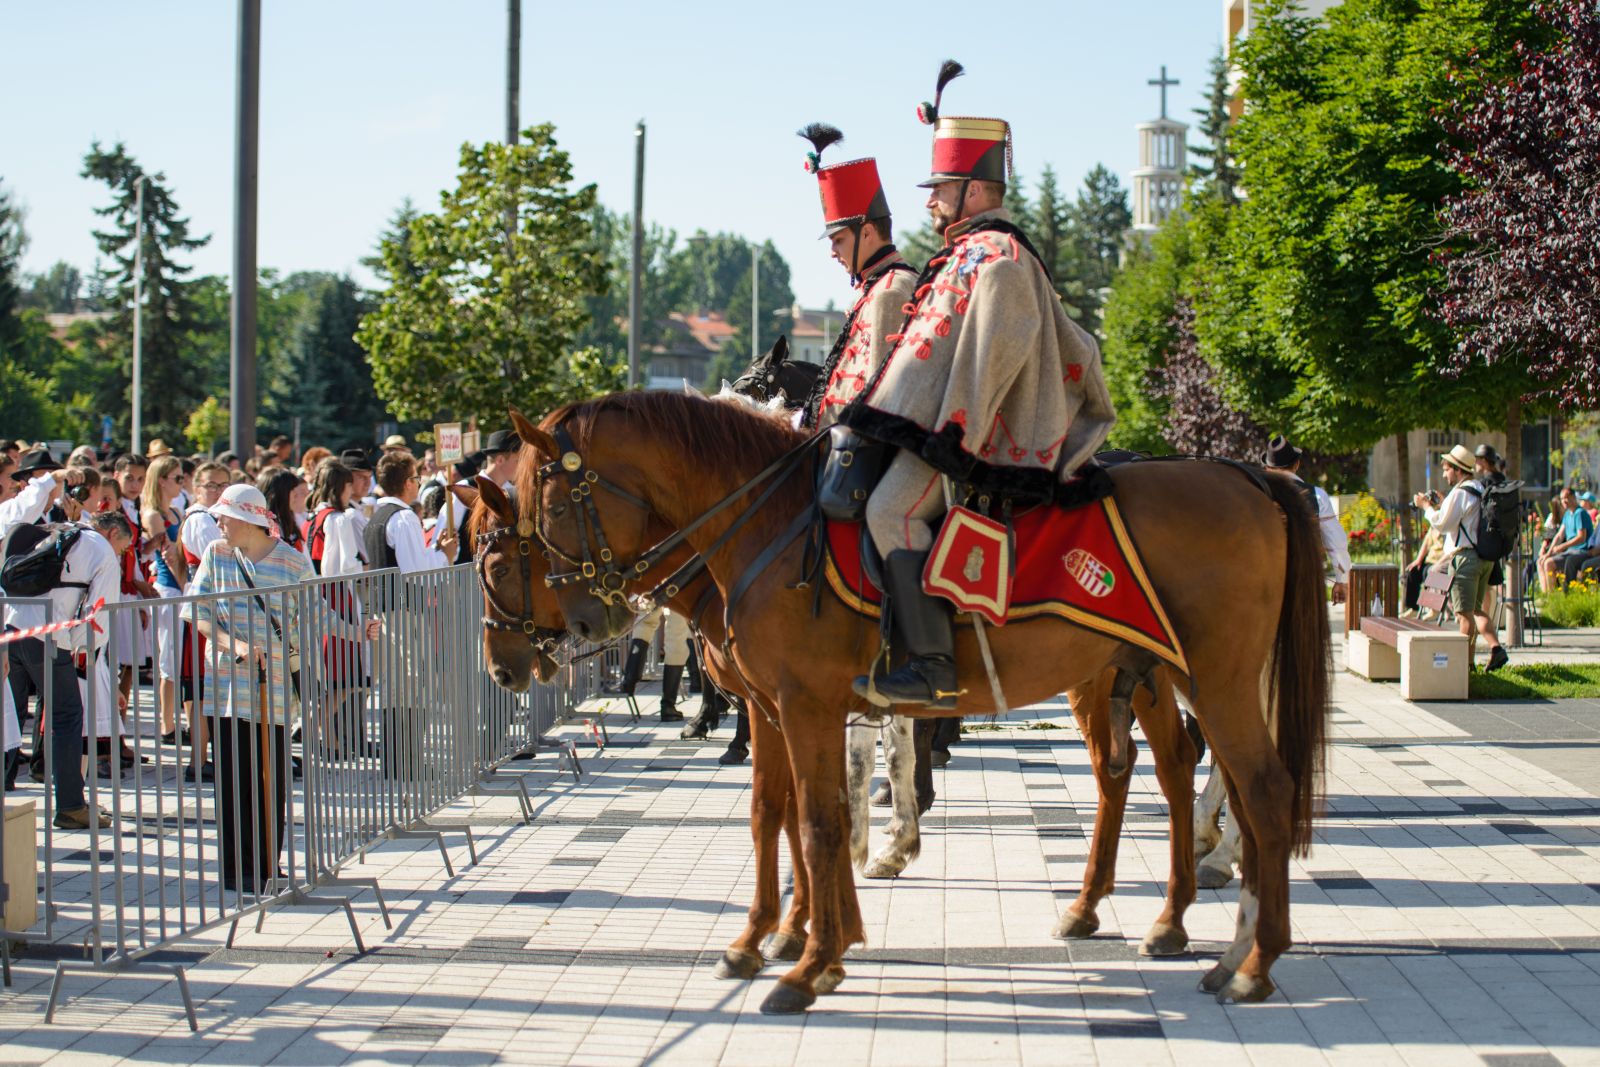 A Csíkszéki Mátyás Huszár Egyesület tagjai kísérték Csíkszereda központjába a városszéli találkozóhelyekről a lovas szekerekkel érkező résztvevőket.